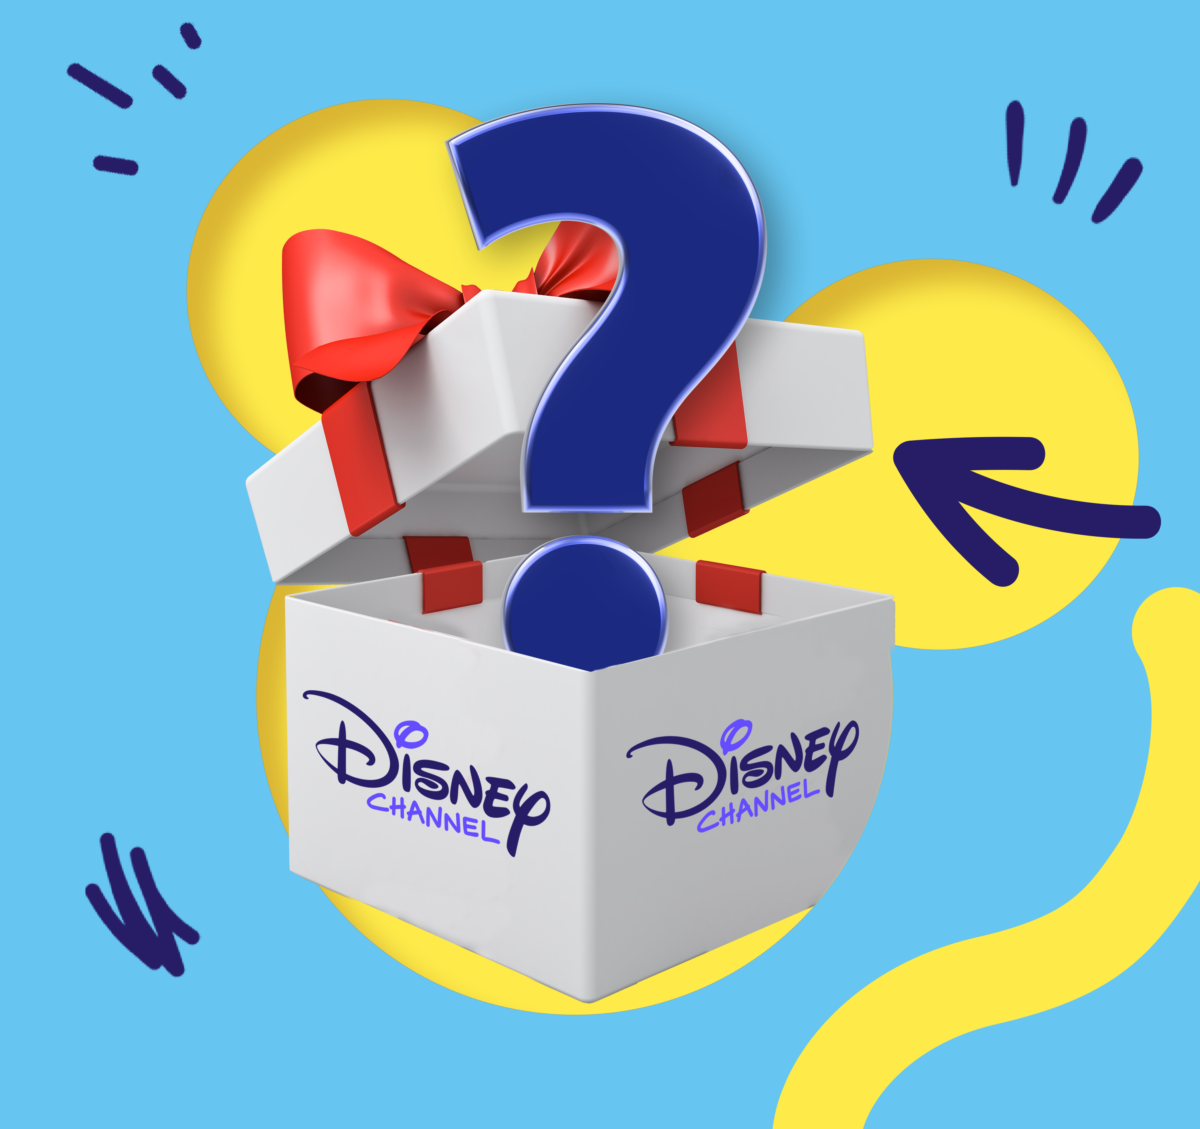 Gewinnspiel: Disney Channel Überraschungspakete zu gewinnen